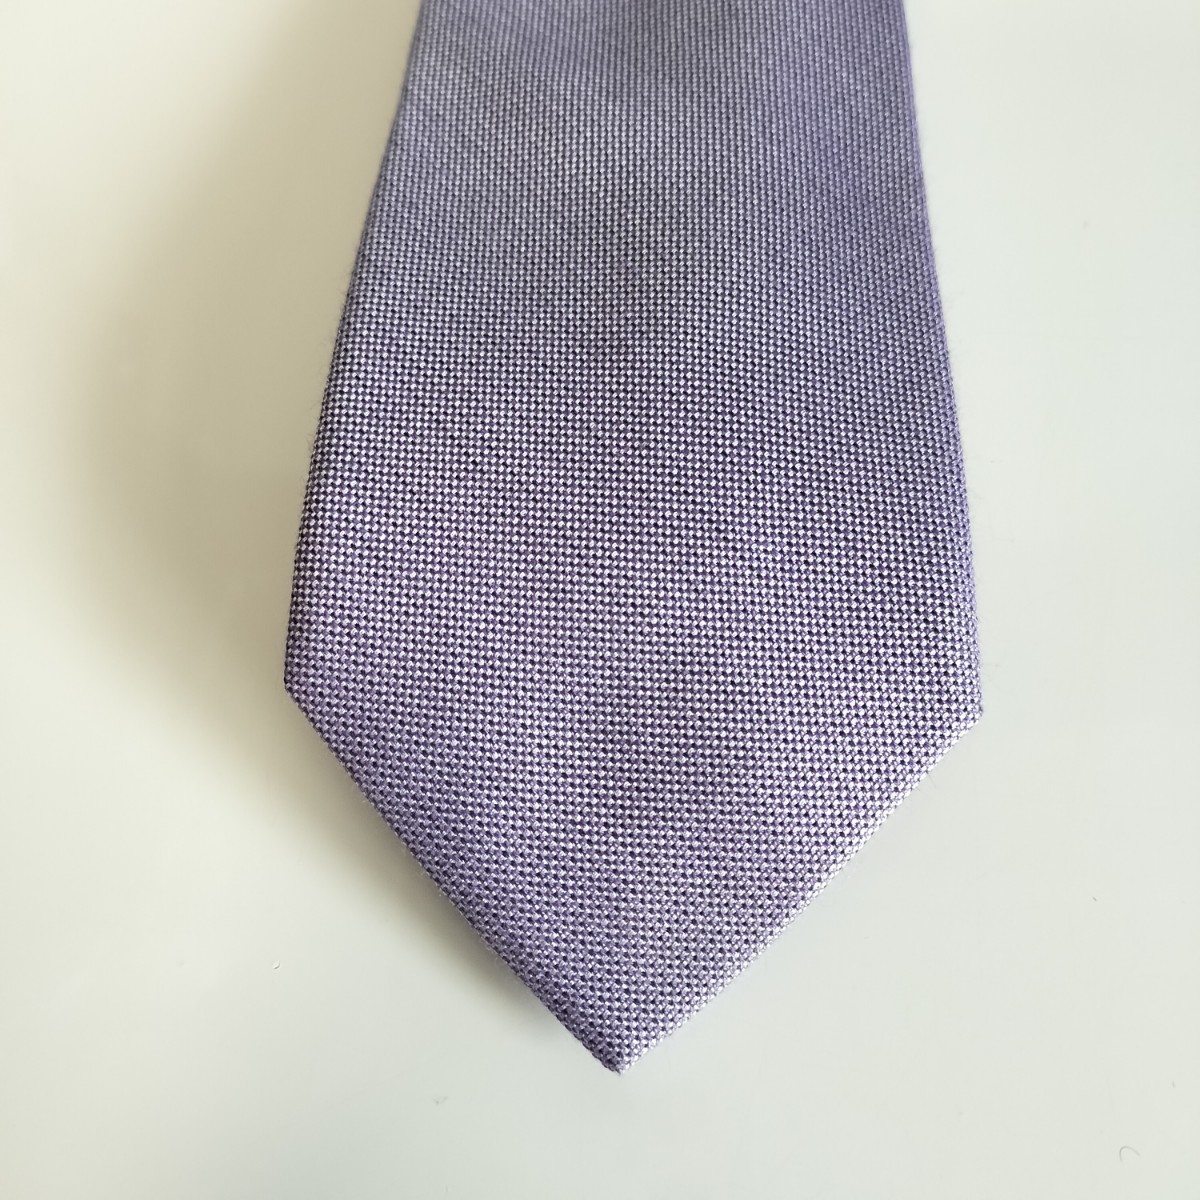  Calvin Klein (Calvin Klein) light purple necktie 